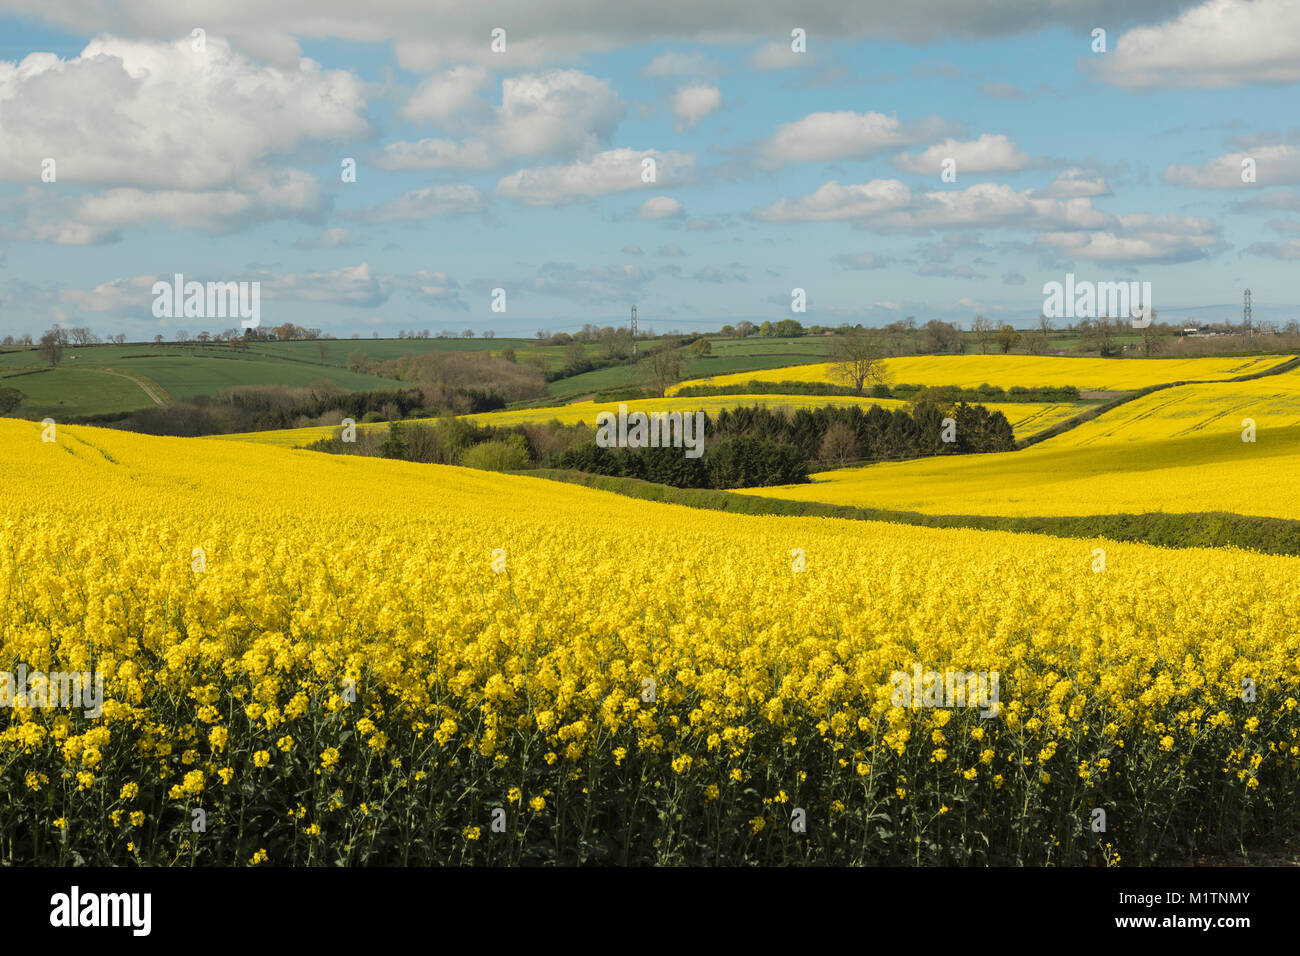 Une image de champs de colza sur les terres agricoles en anglais. Banque D'Images